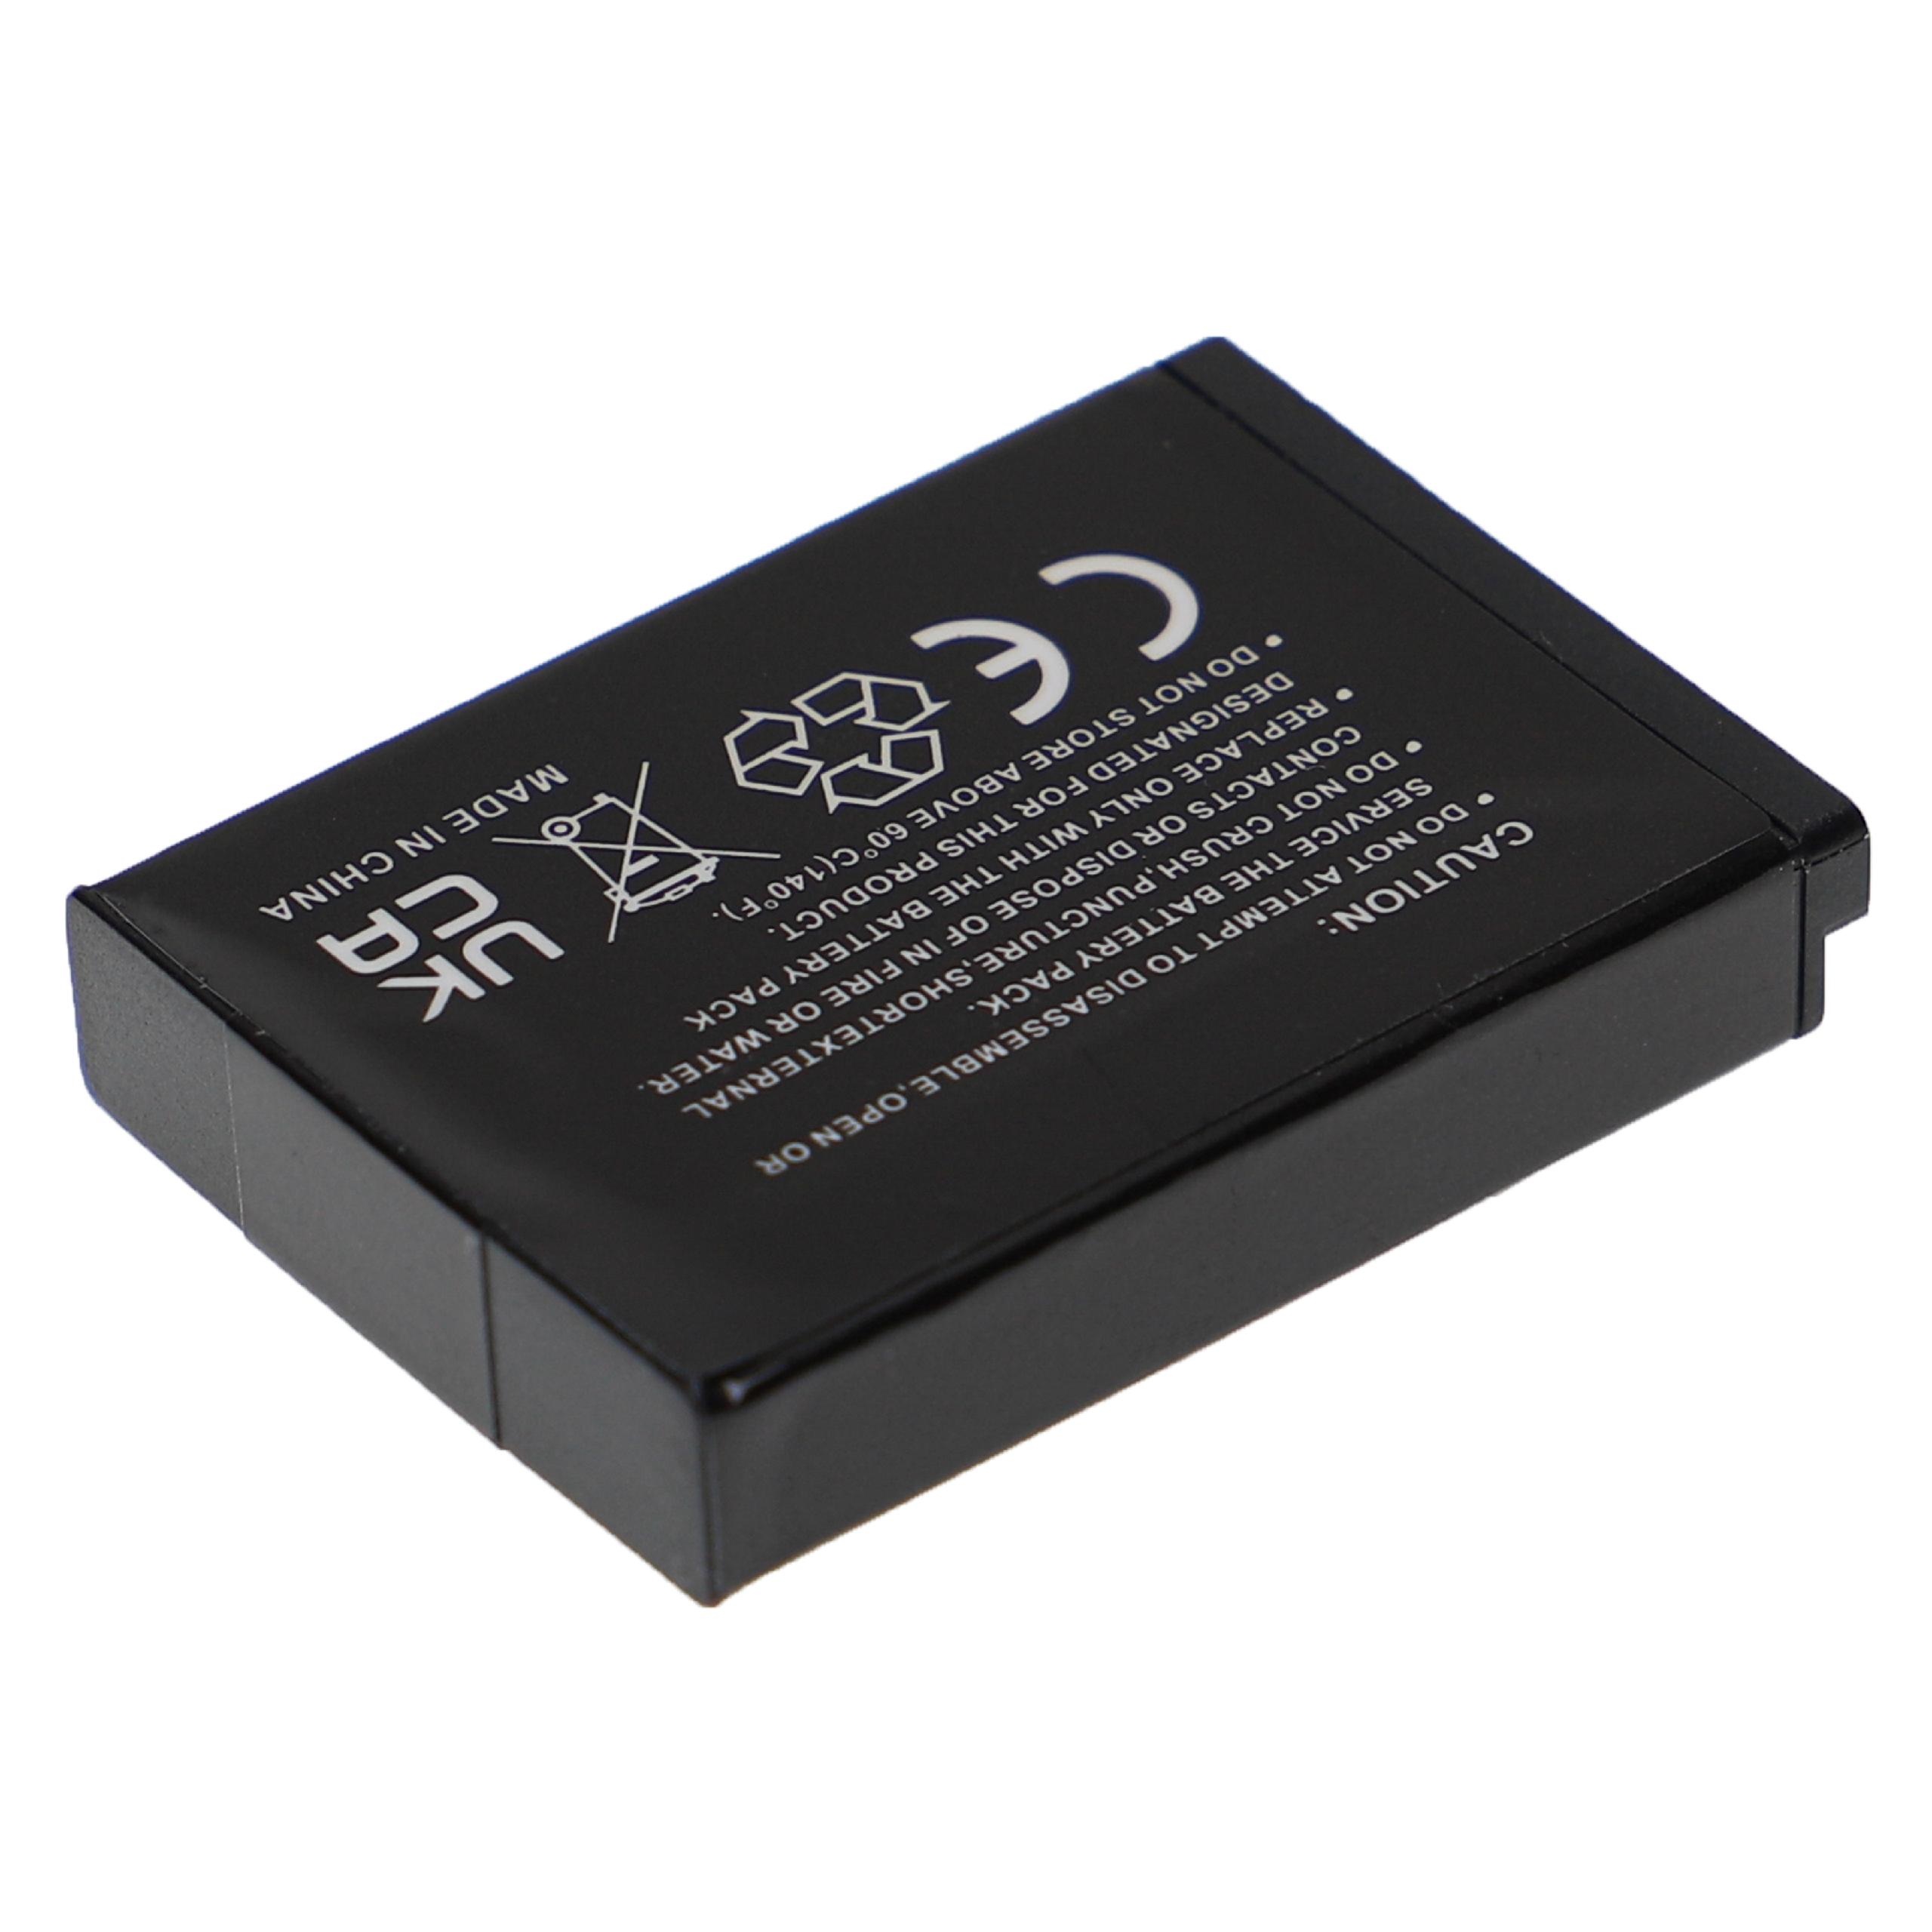 Batterie remplace Samsung BP-85a, BP85a, EA-BP85a, IA-BP85a pour appareil photo - 750mAh 3,7V Li-ion